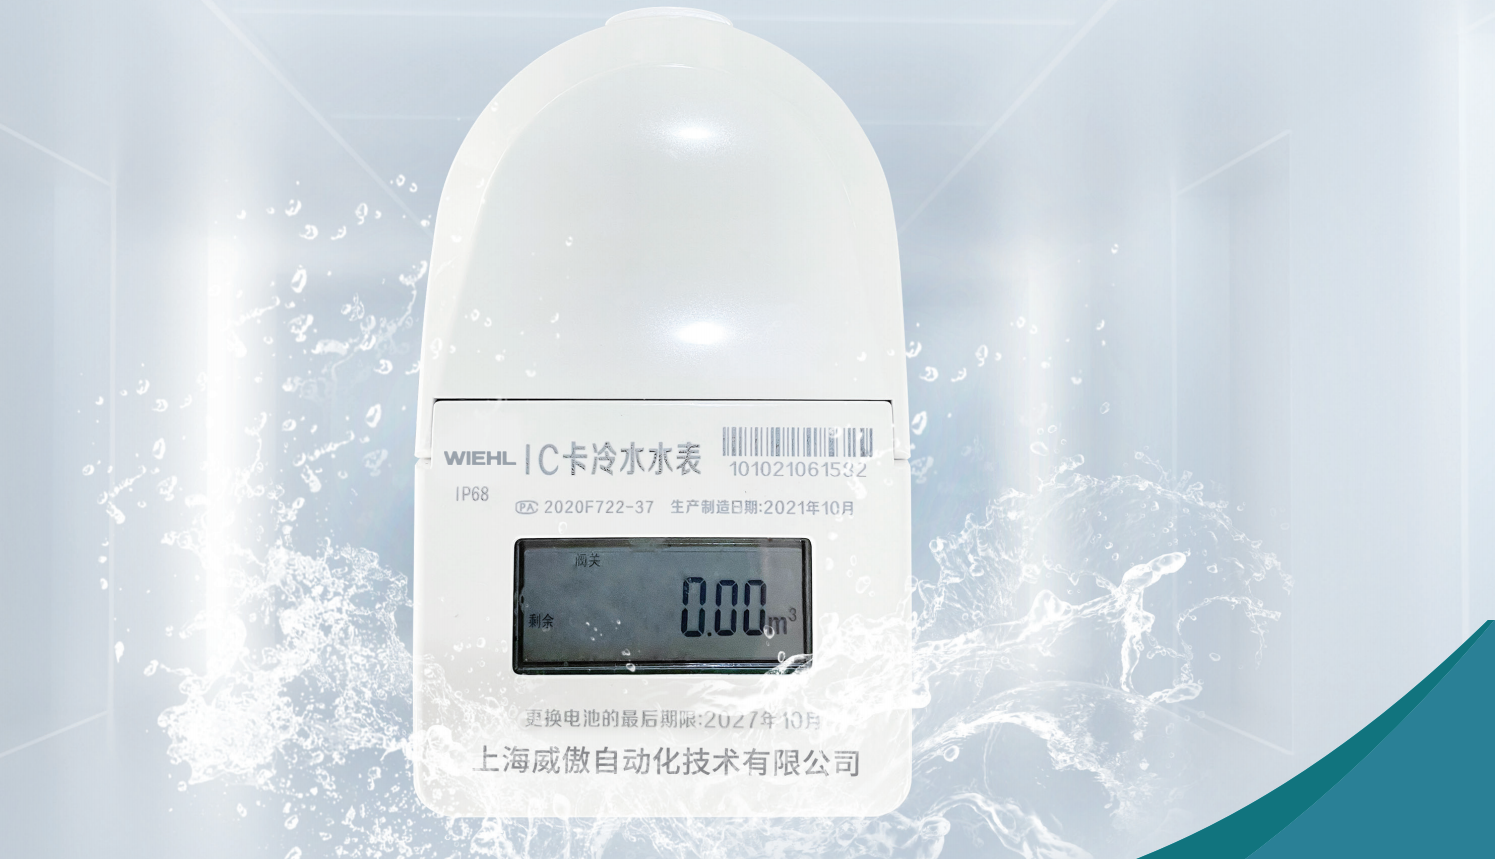 无线远传水表工作原理_无线远程水表原理_无线远传冷水水表